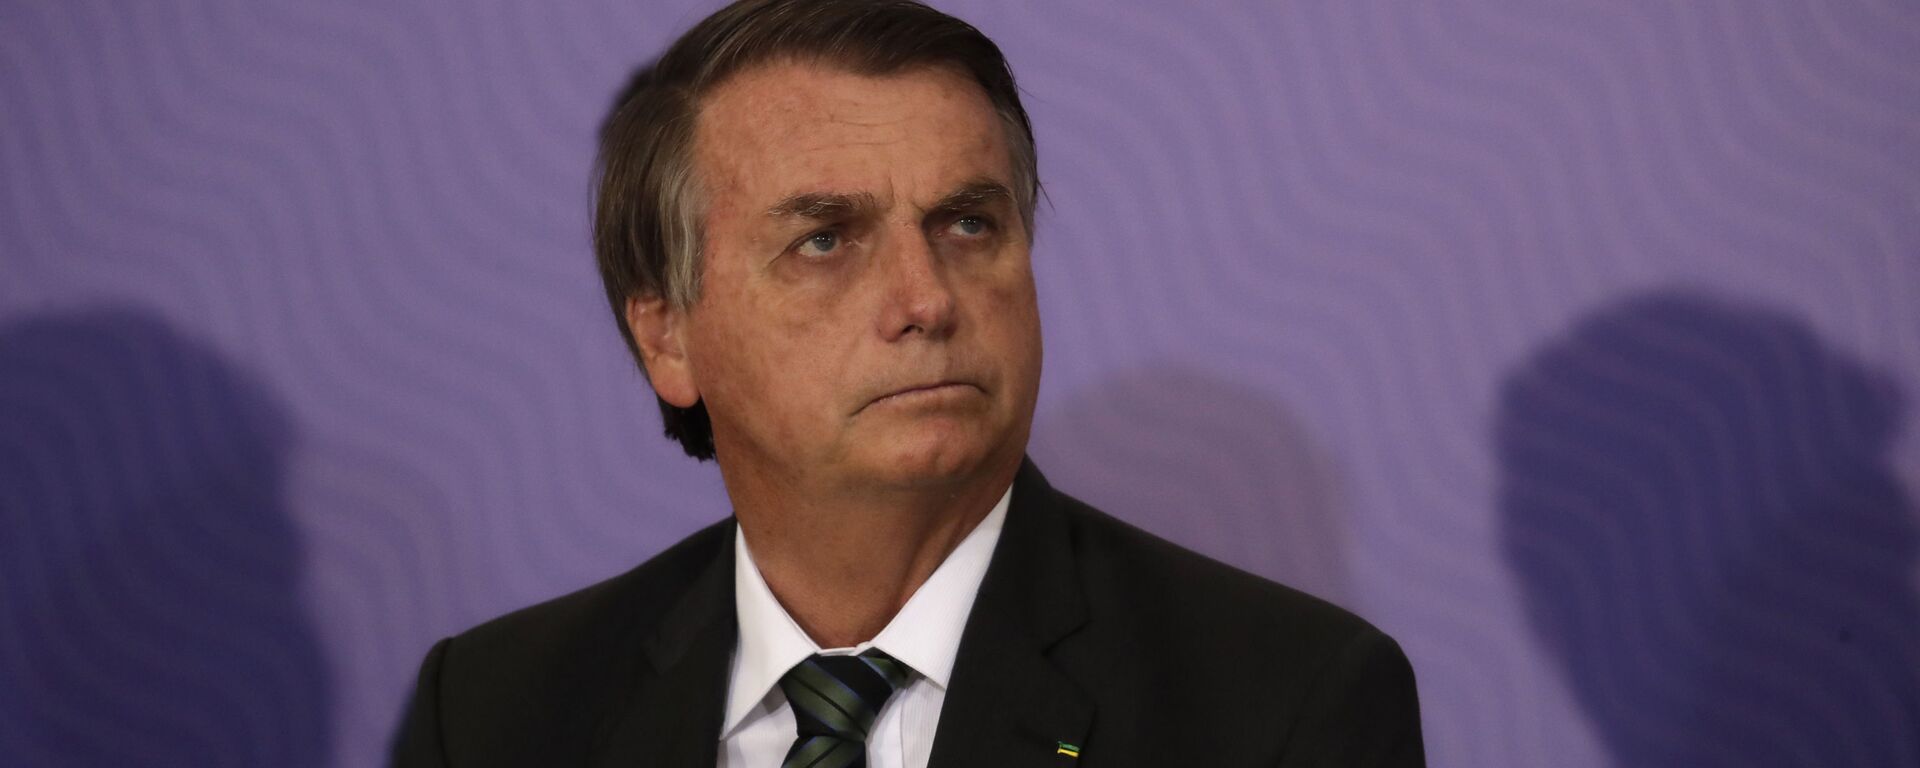 El presidente de Brasil, Jair Bolsonaro - Sputnik Mundo, 1920, 08.11.2021